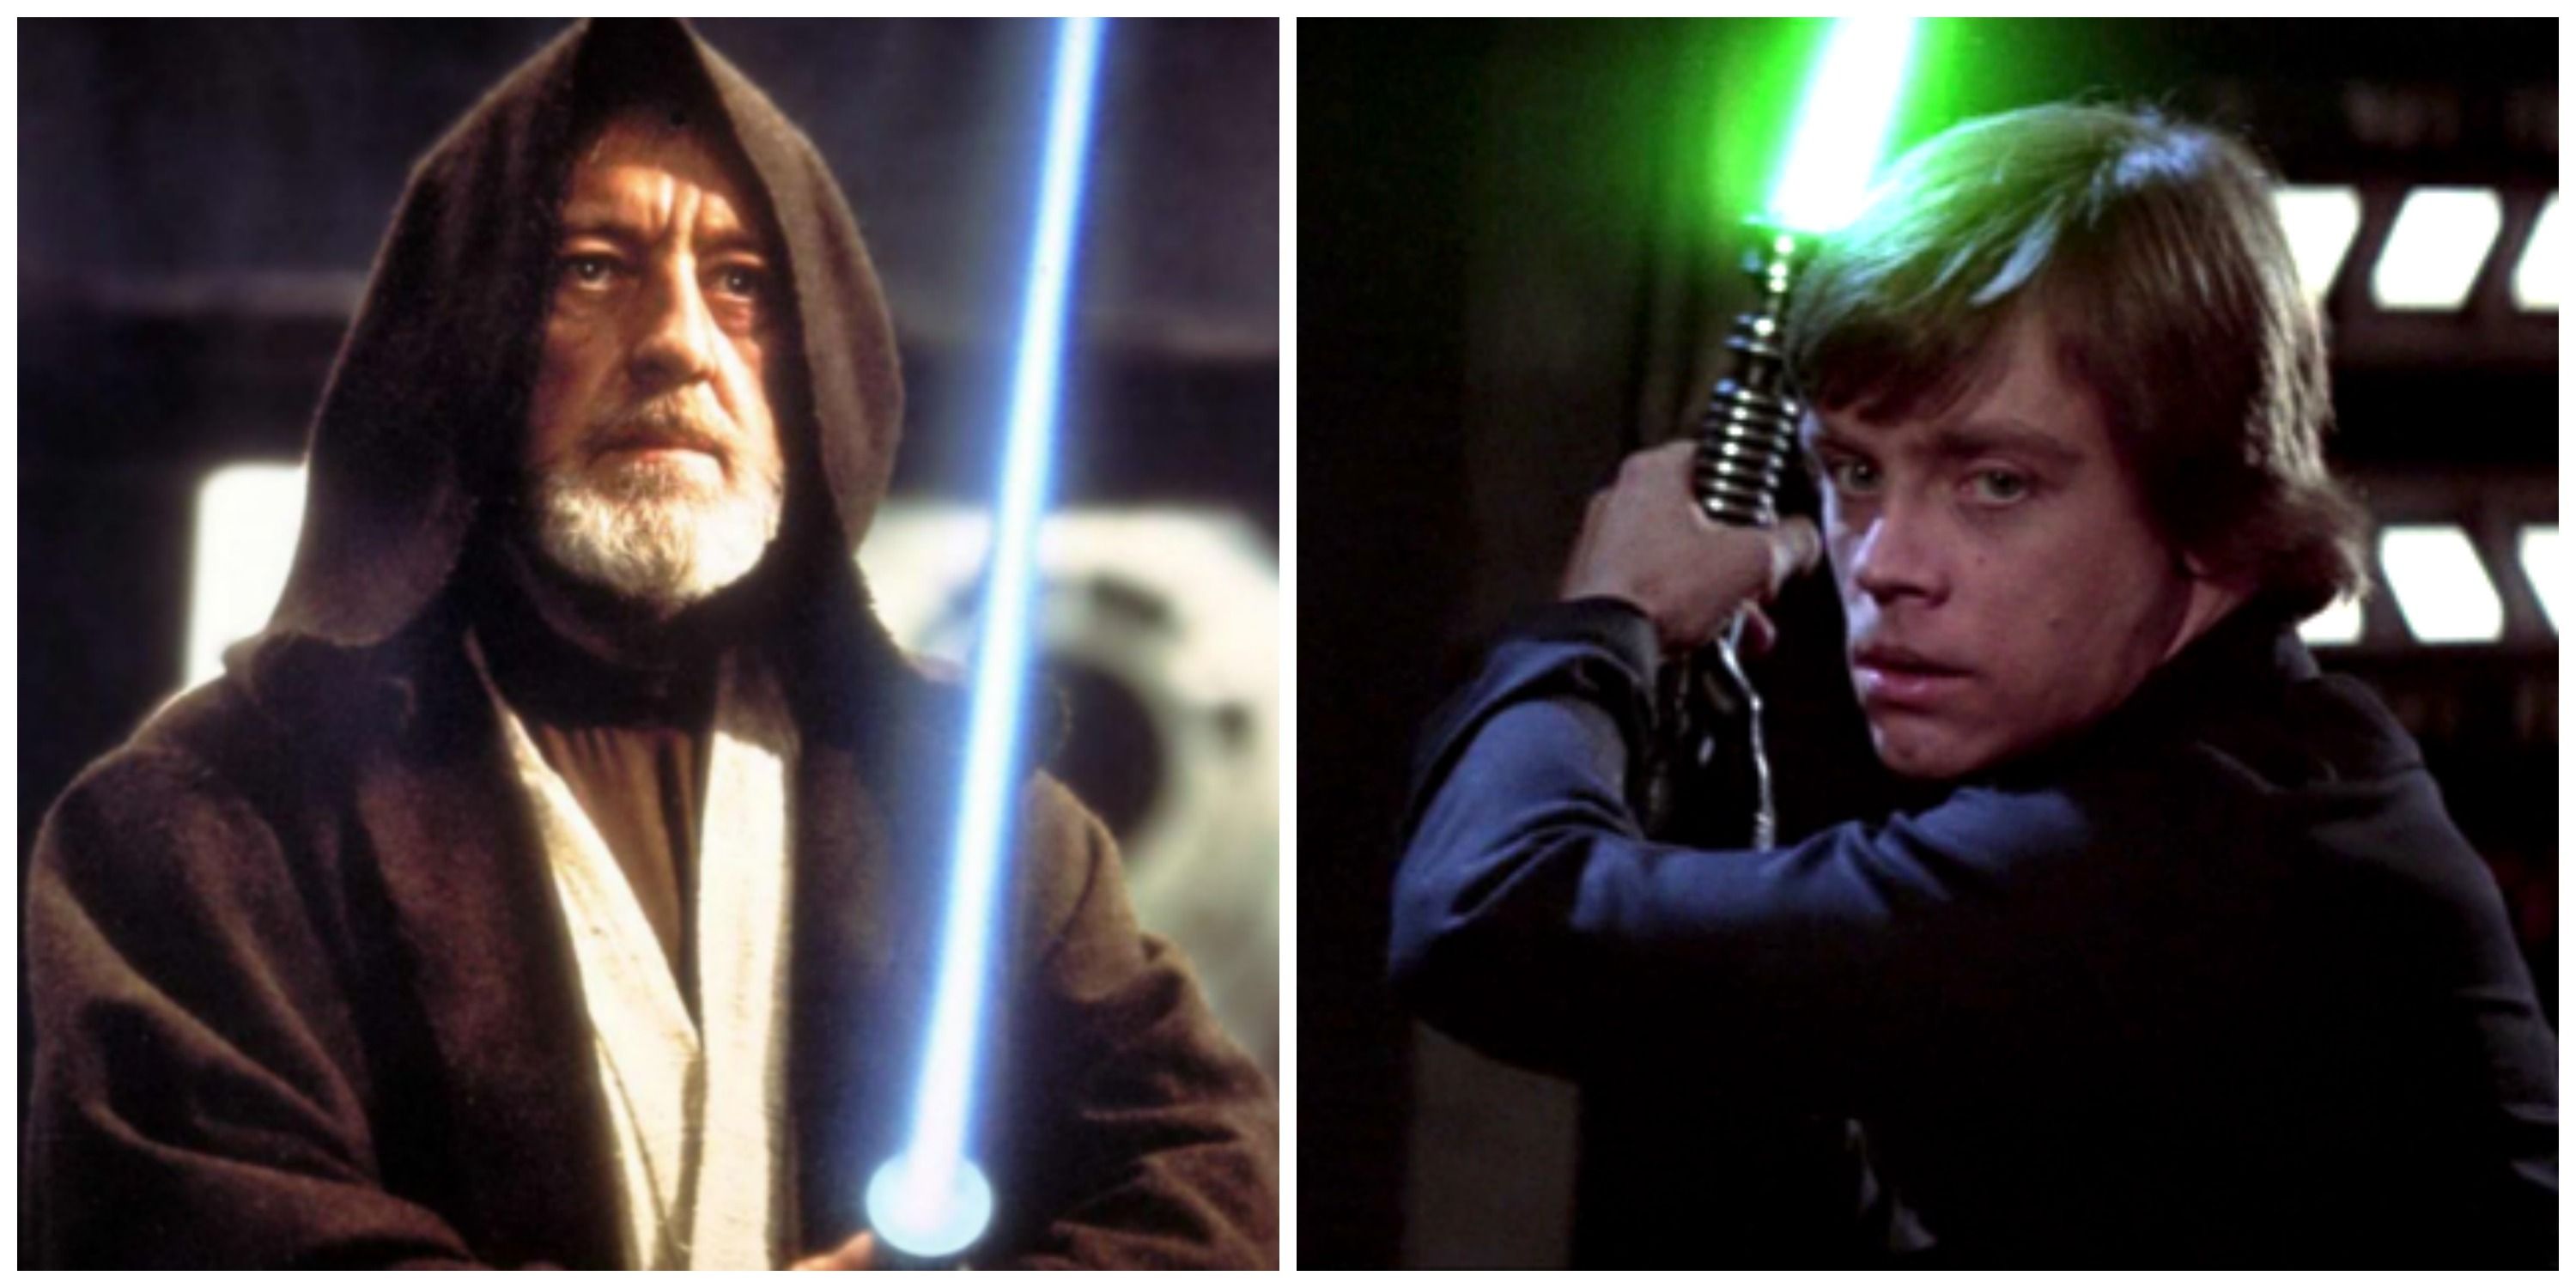 Obi Wan Kenobi and Luke Skywalker with lightsabers